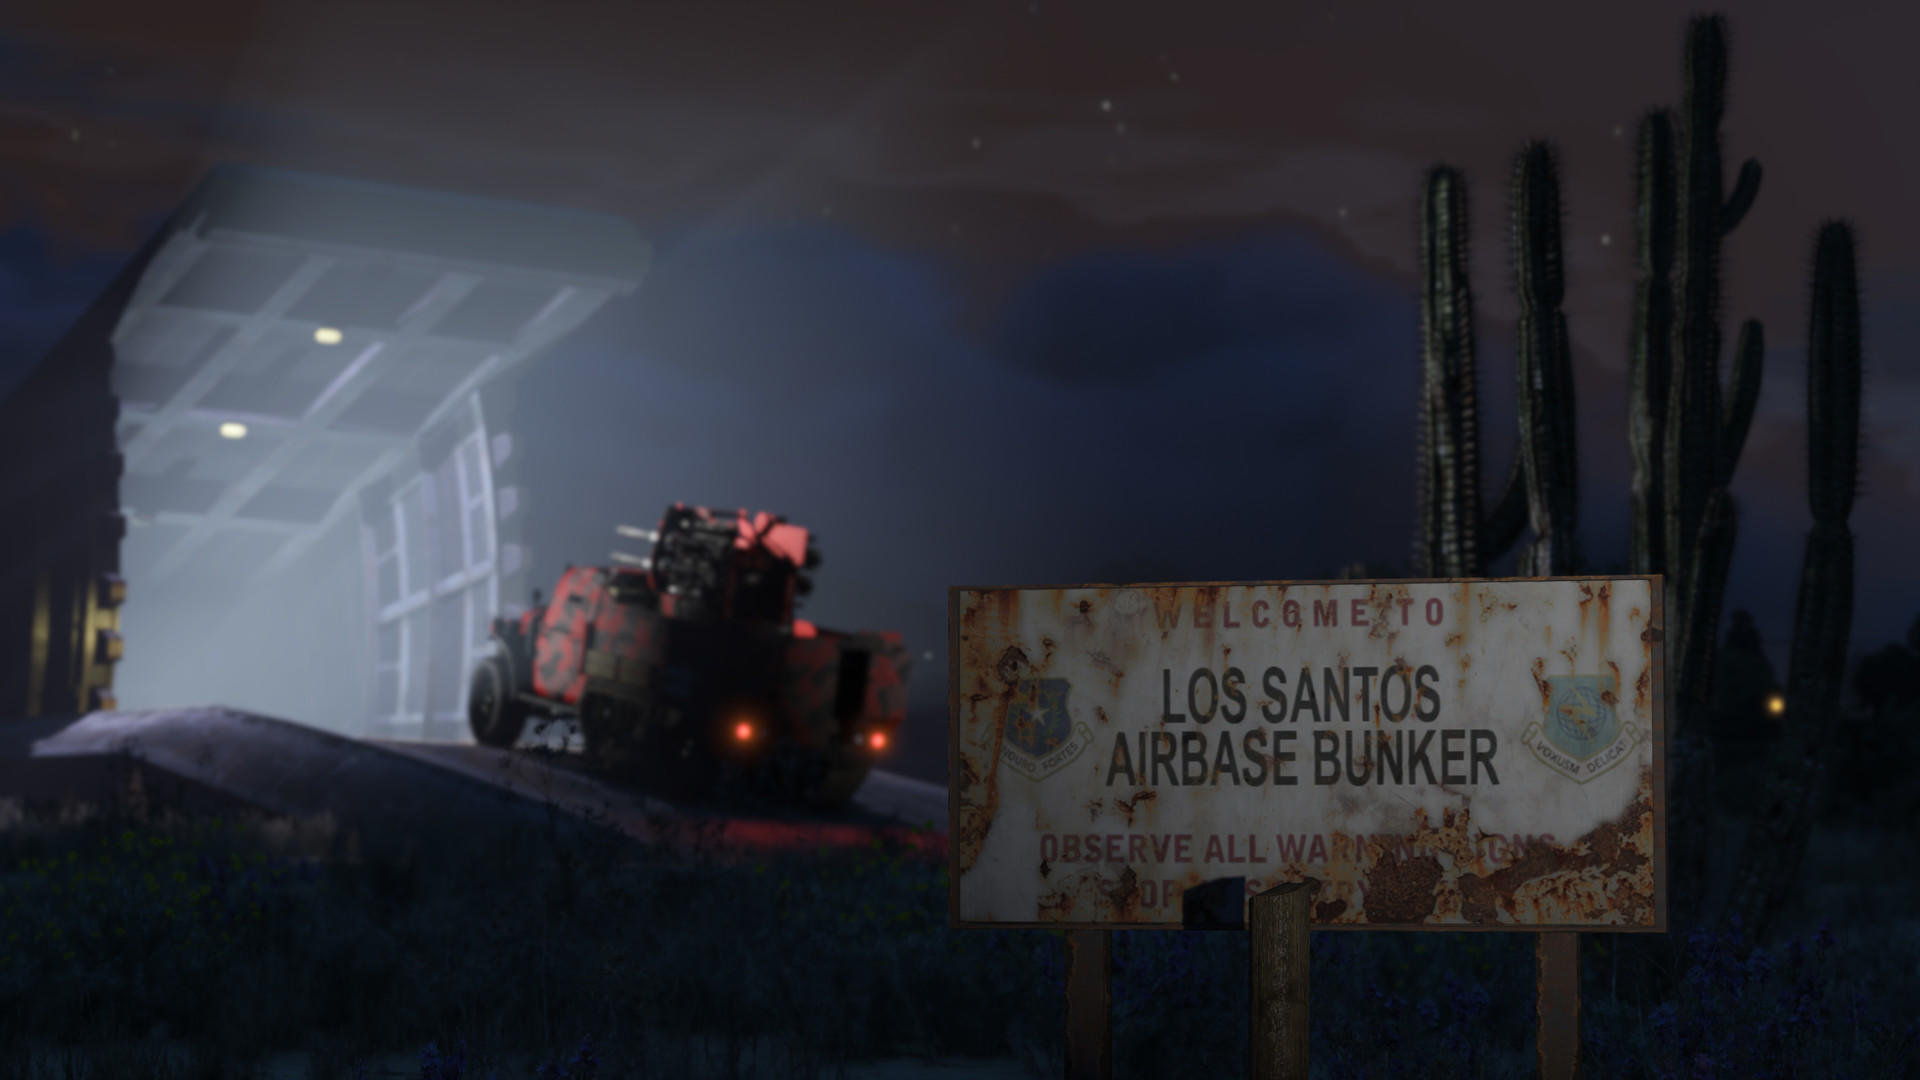 Screenshot of Grand Theft Auto V